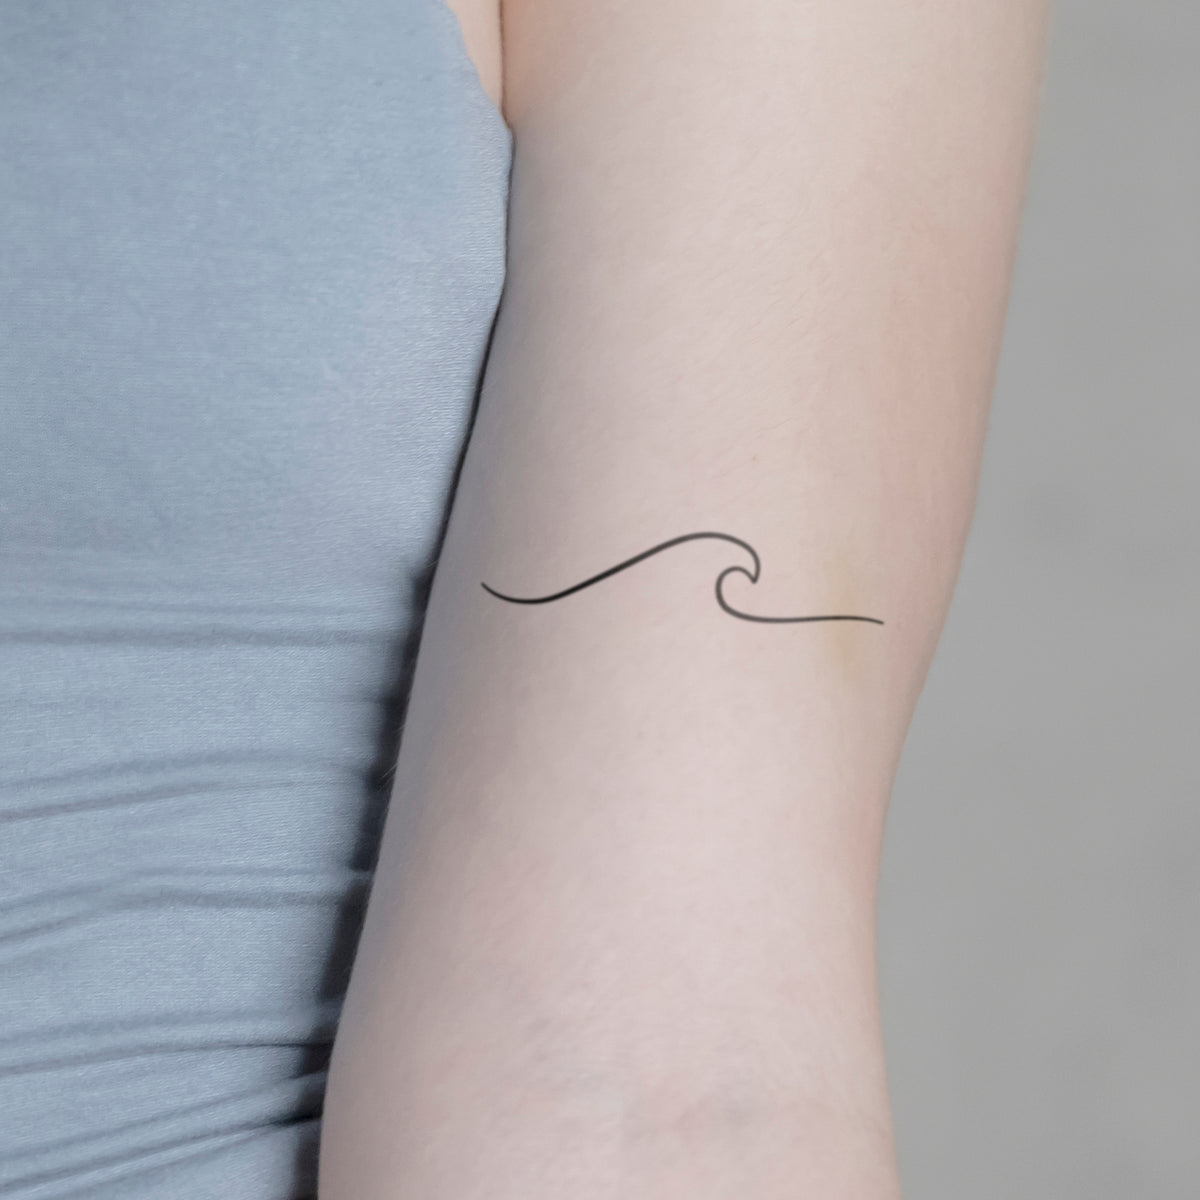 Grosse Welle Tattoo von minink, der Marke für temporäre Tattoos.